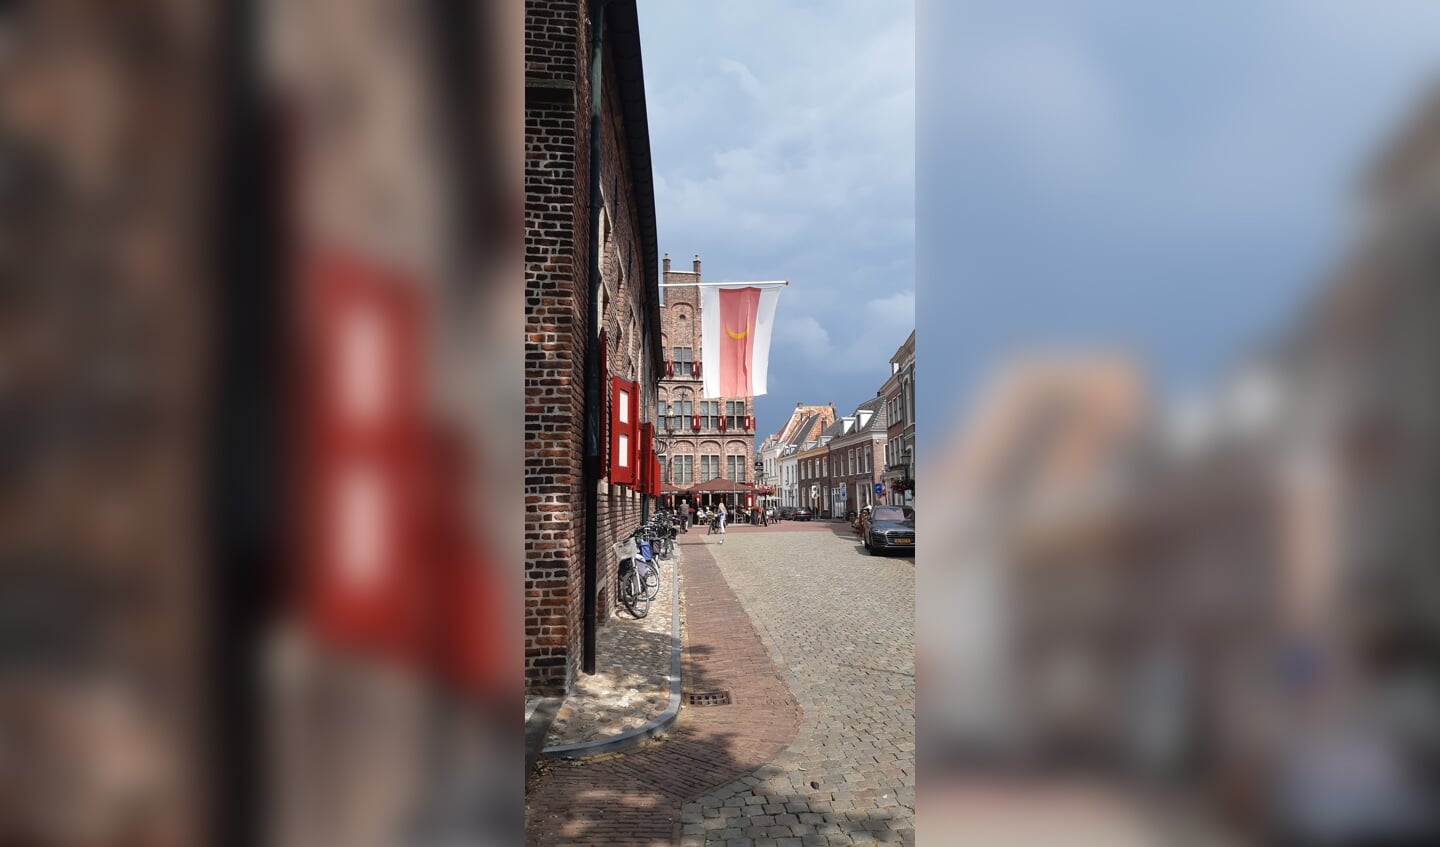 Deze foto's zijn begin juli gemaakt in het mosterdstadje Doesburg. Mooie plaats om te bezoeken!
